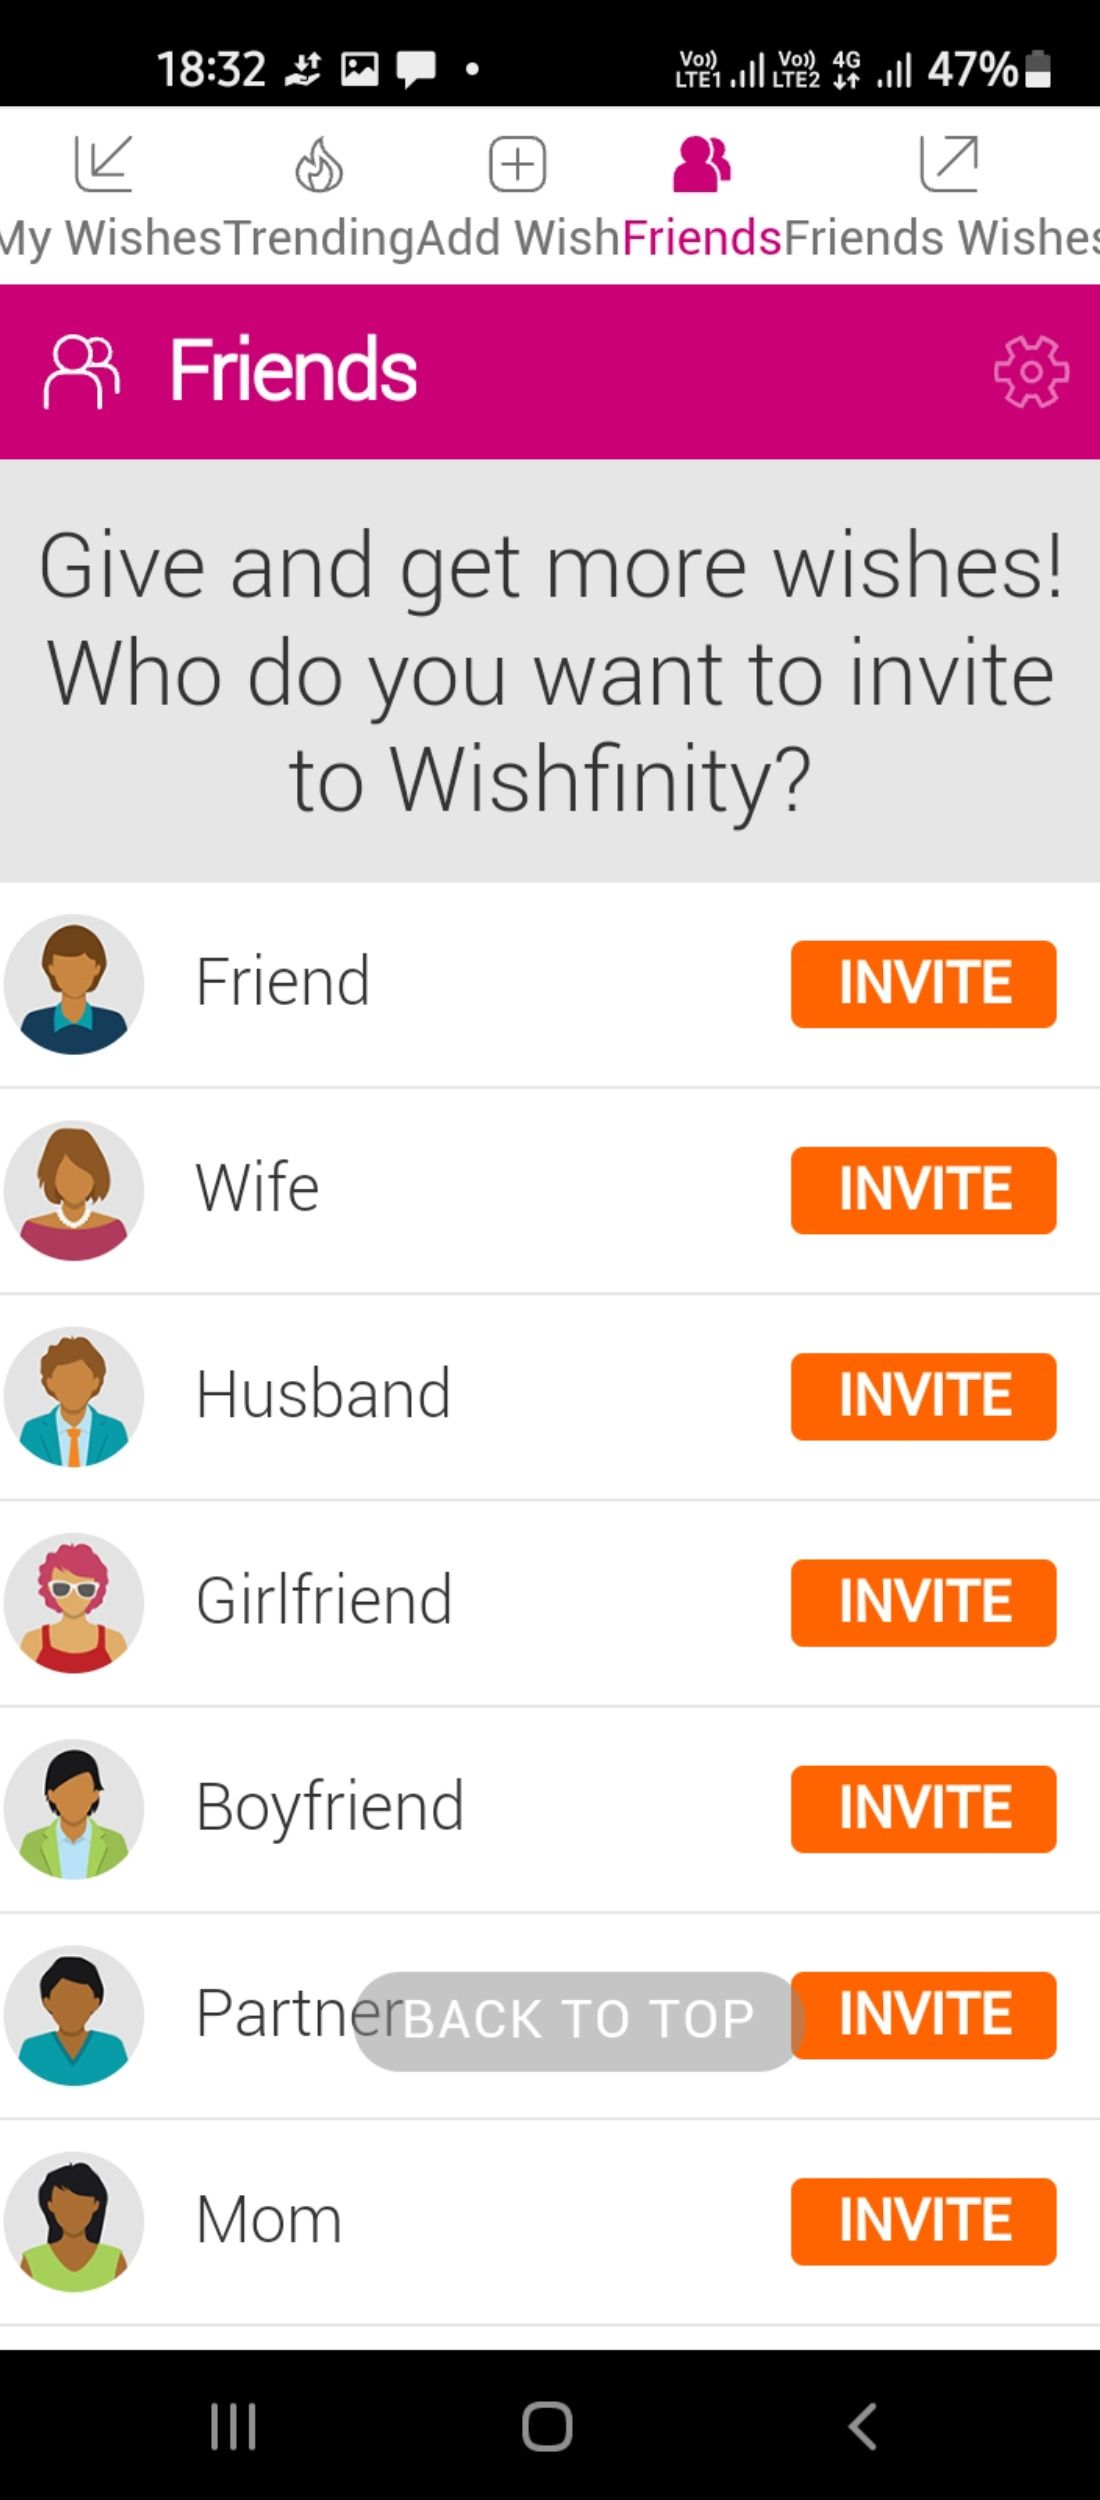 Invite feature to share wishlists via Wishfinity